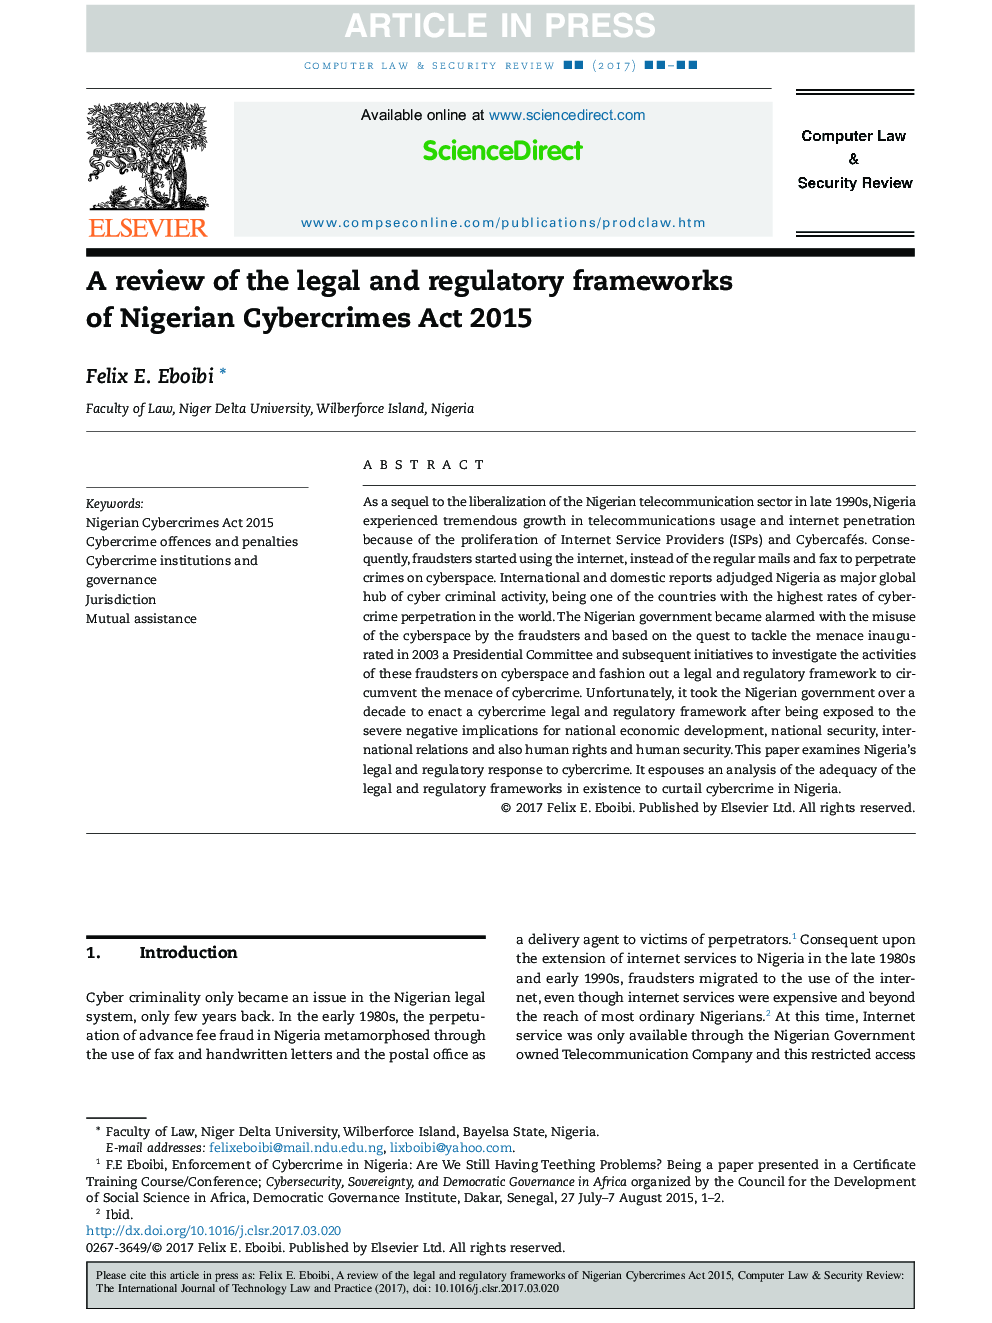 بررسی چارچوب قانونی و نظارتی قانون مجازات جرایم سایبری نیجریه در سال 2015 